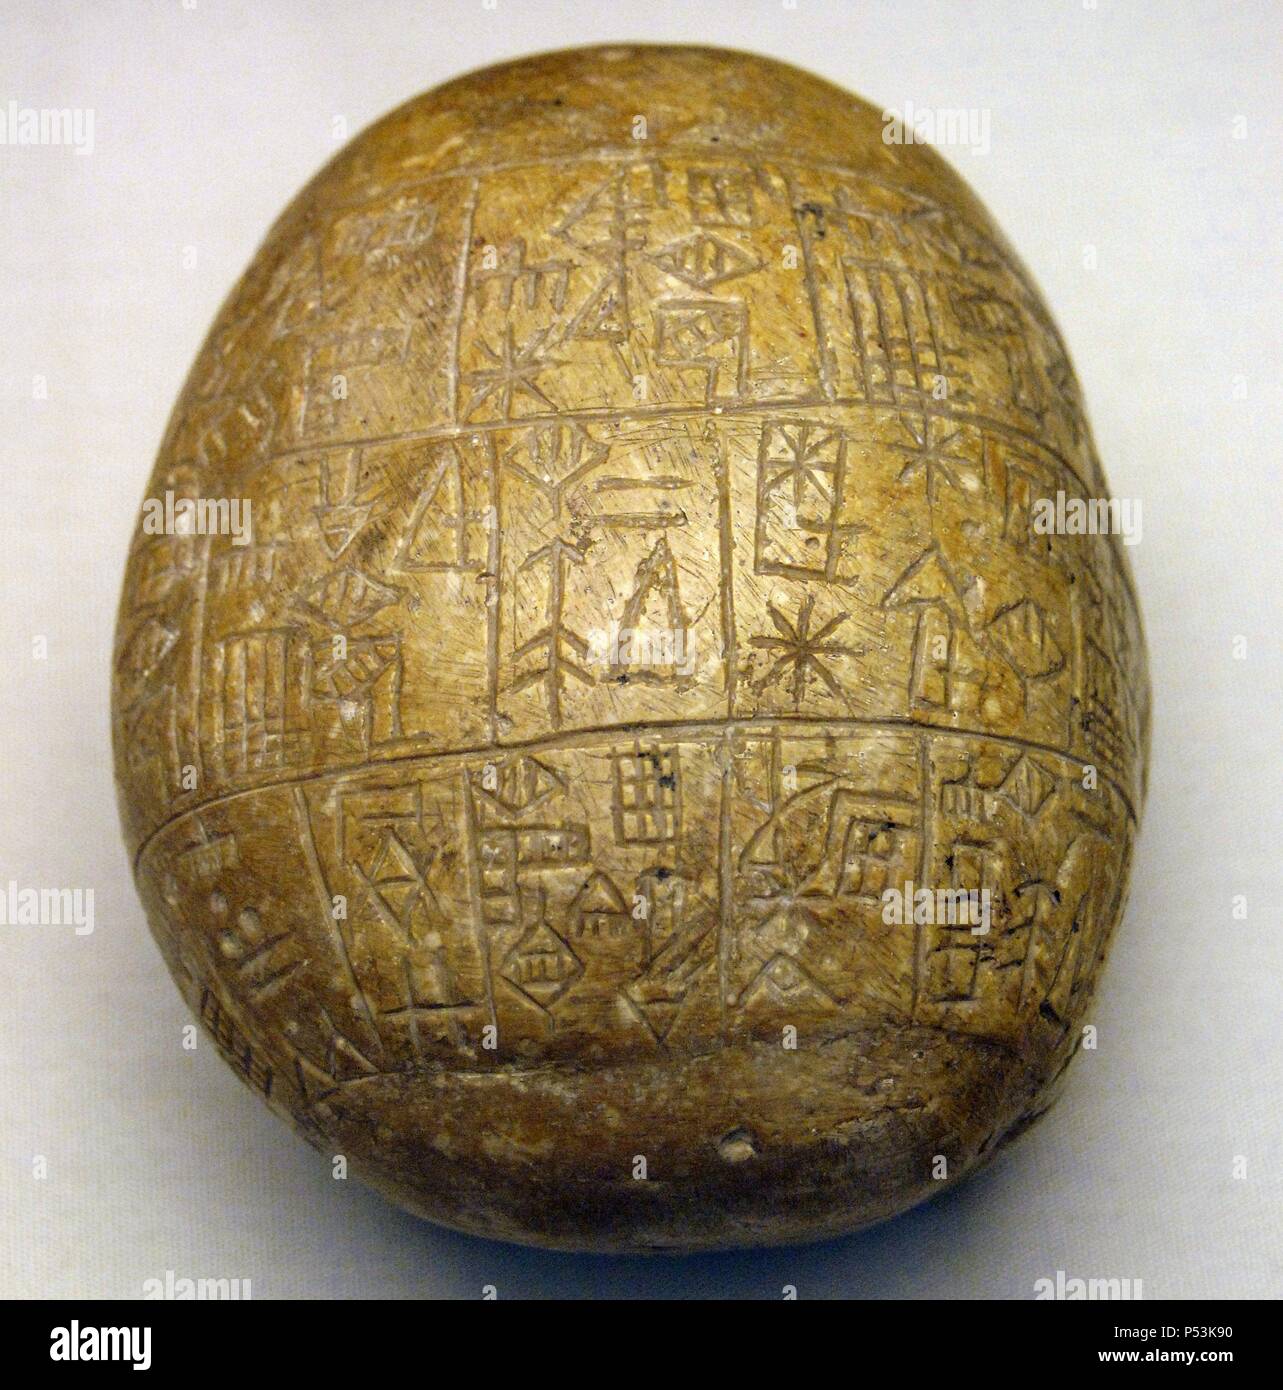 Mesopotamia. Inizio periodo dinastico III. Ciottoli votiva con iscrizione. Eanmtum I Re. 2424-2405 A.C. Da Girsu. British Museum. Londra. In Inghilterra. Regno Unito. Foto Stock